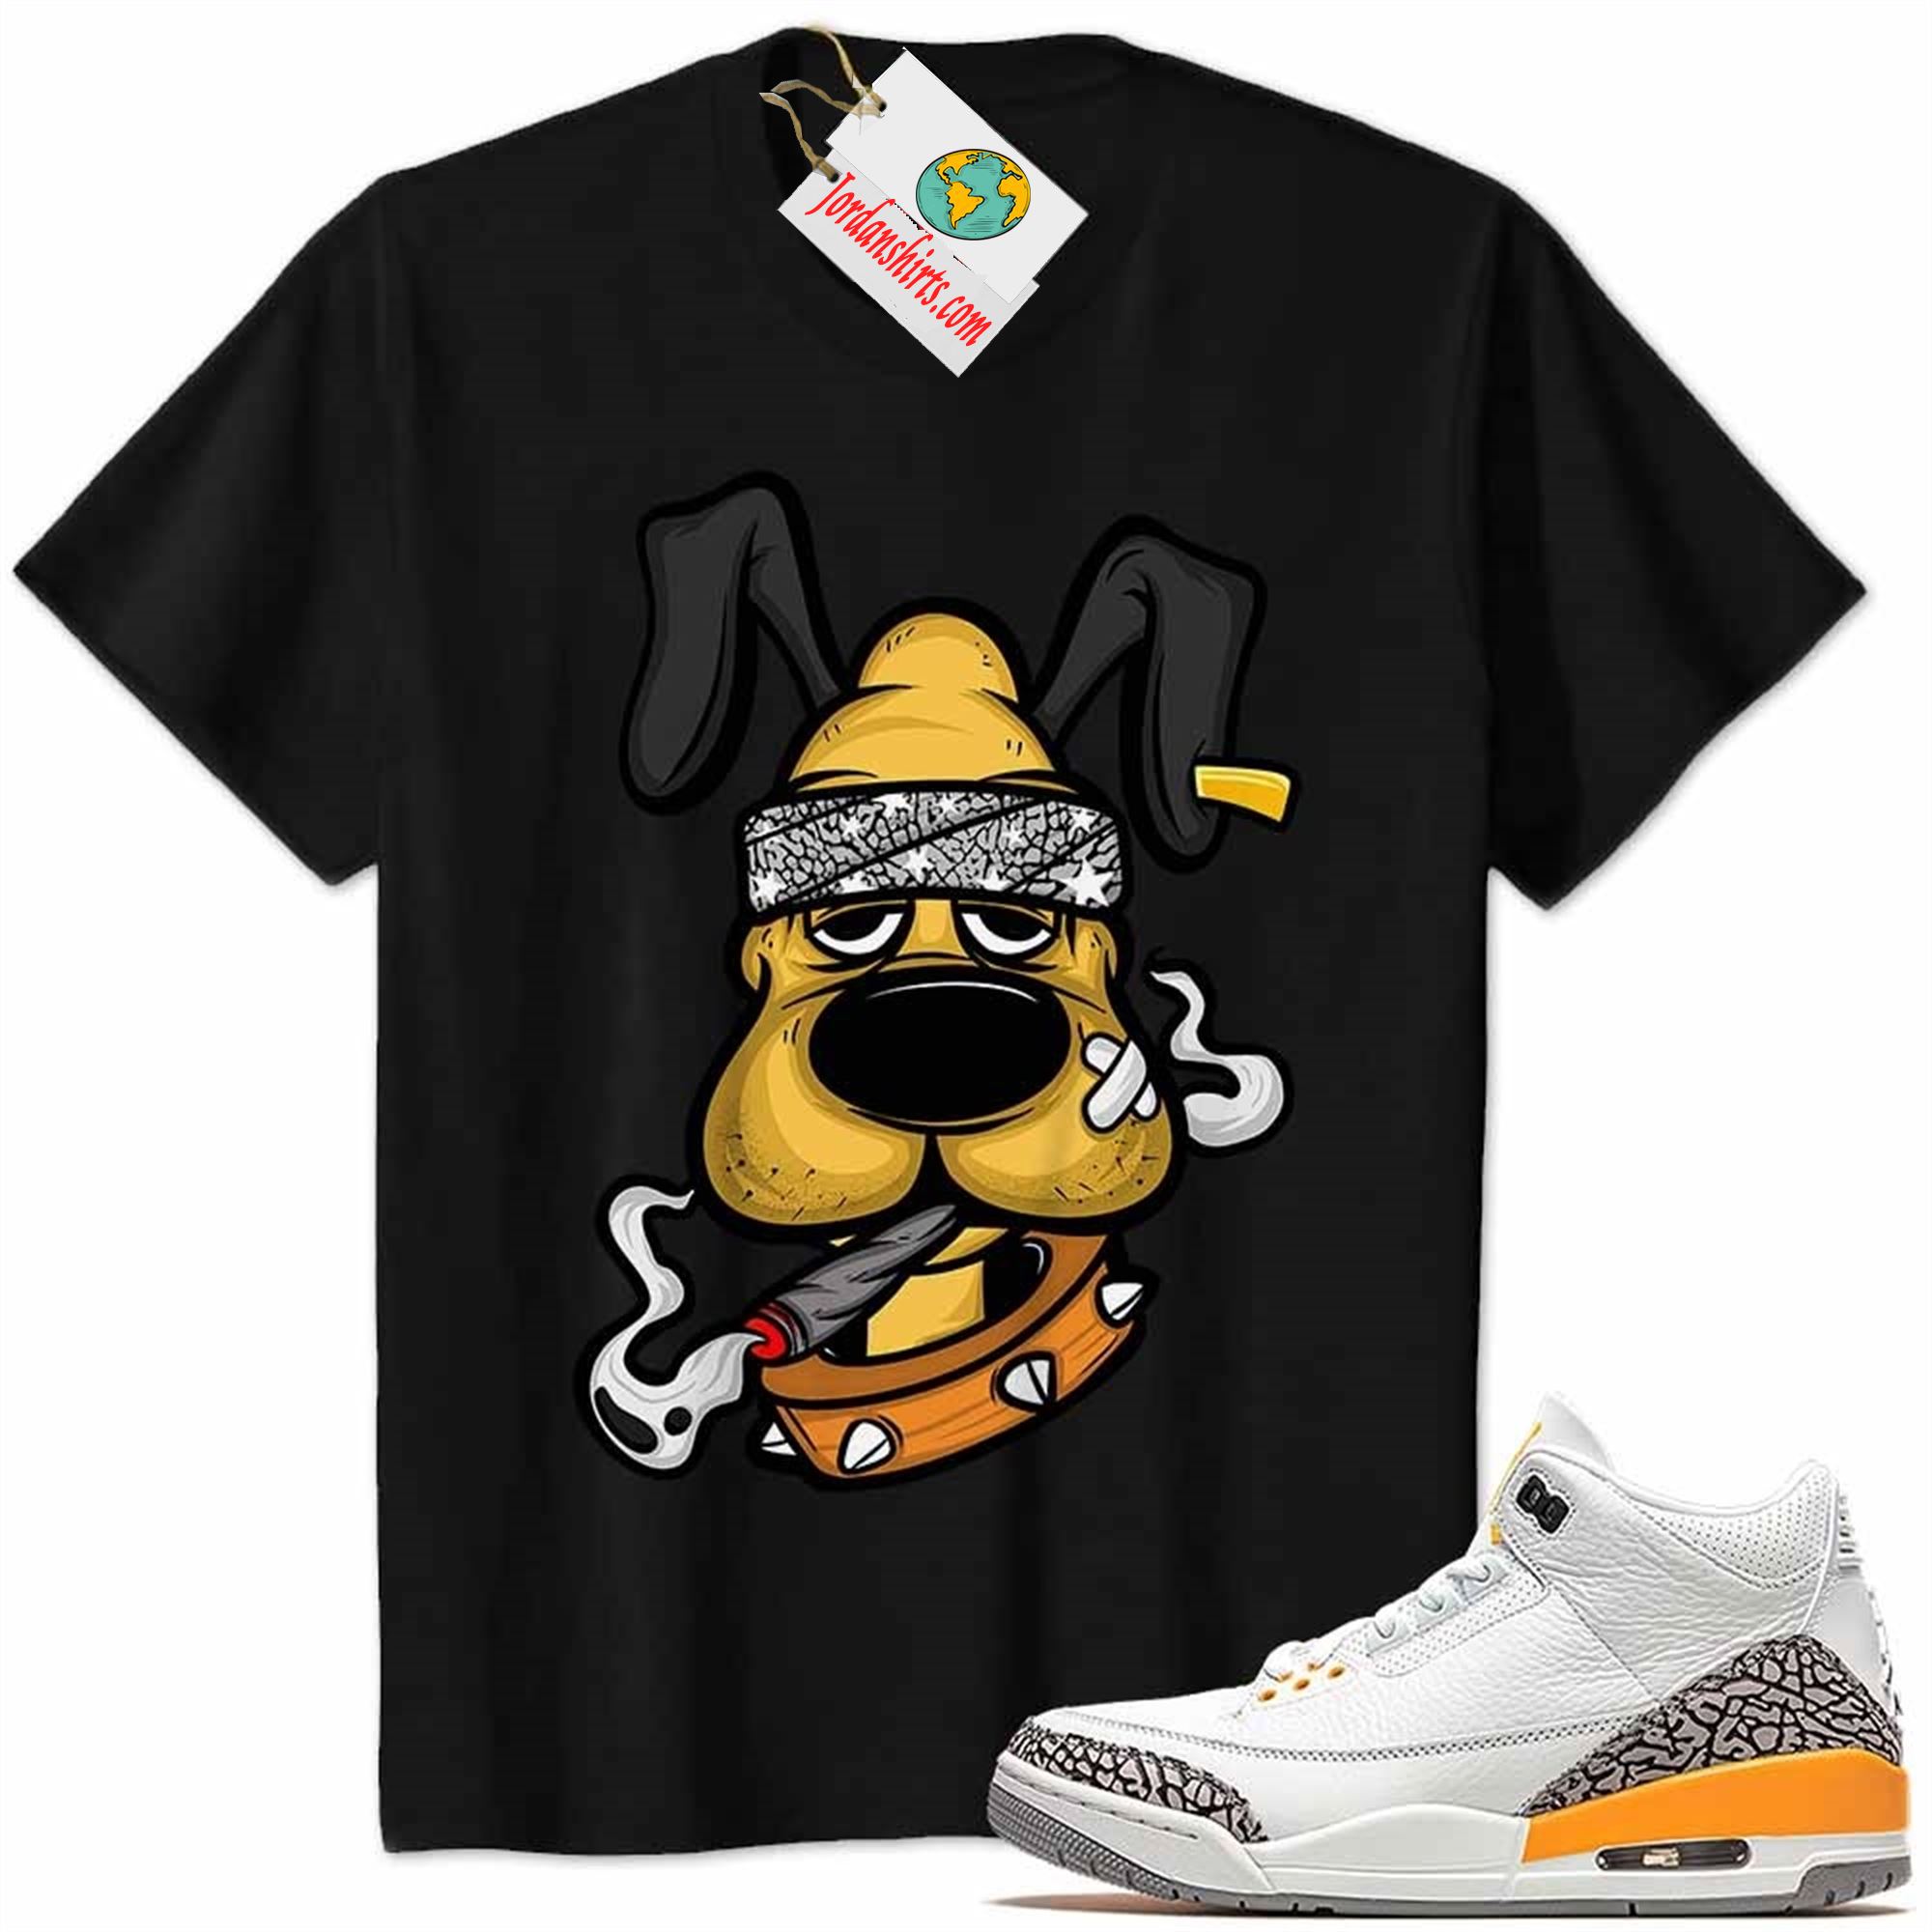 Jordan 3 Shirt, Gangster Pluto Smoke Weed Black Air Jordan 3 Laser Orange 3s Plus Size Up To 5xl